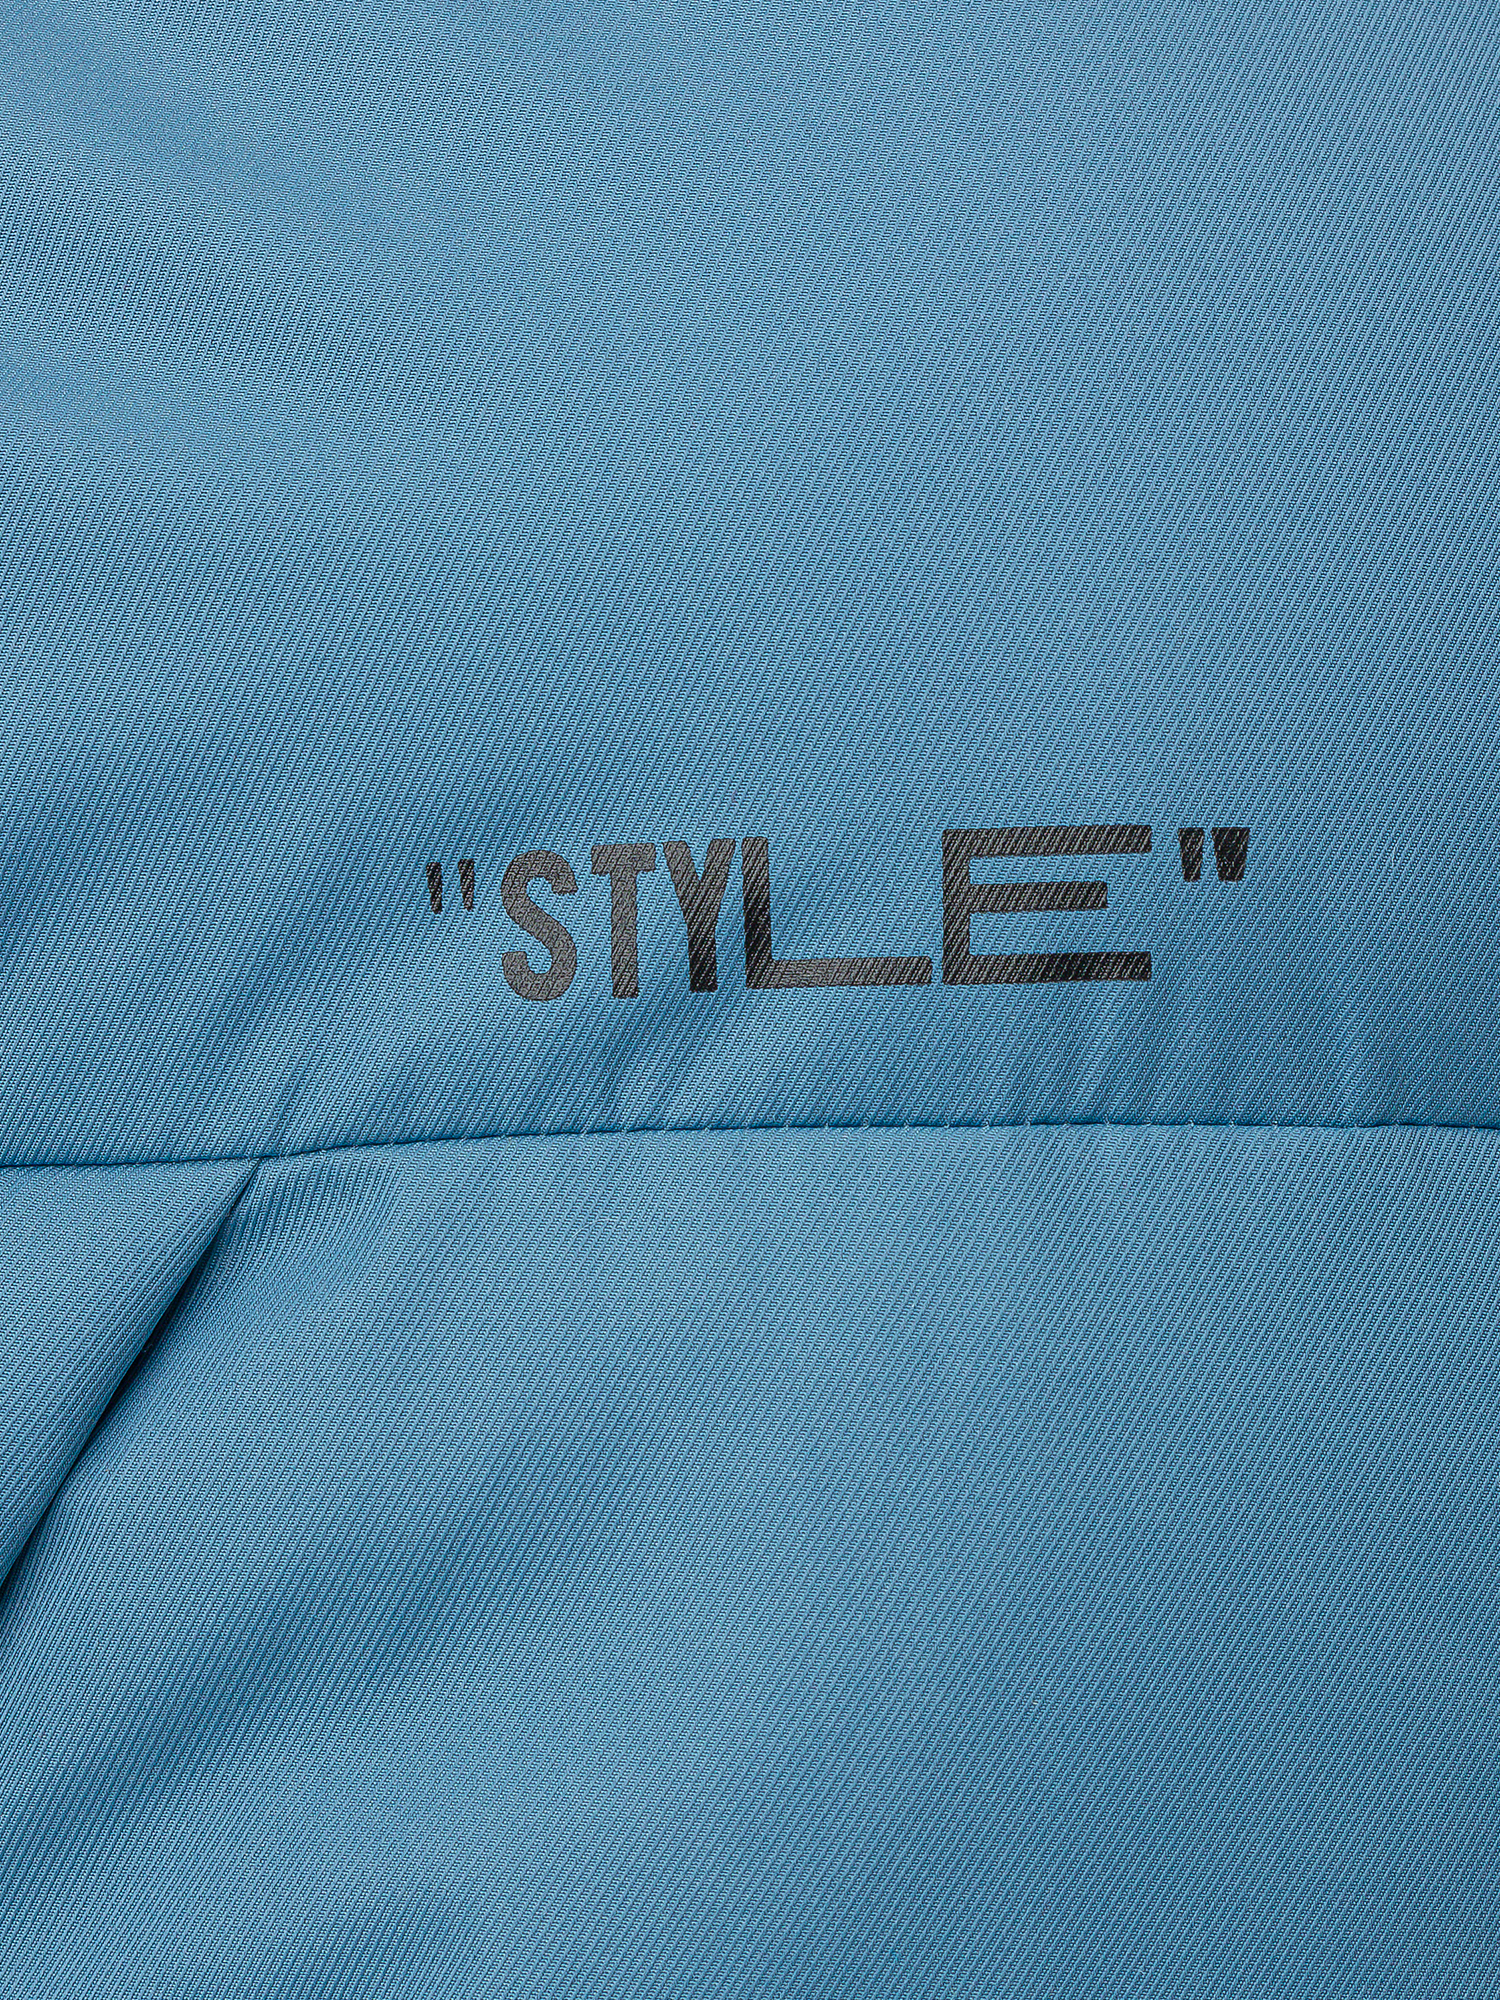 Куртка женская голубая 222OZWC41031800, размер XL, цвет голубой - фото 3